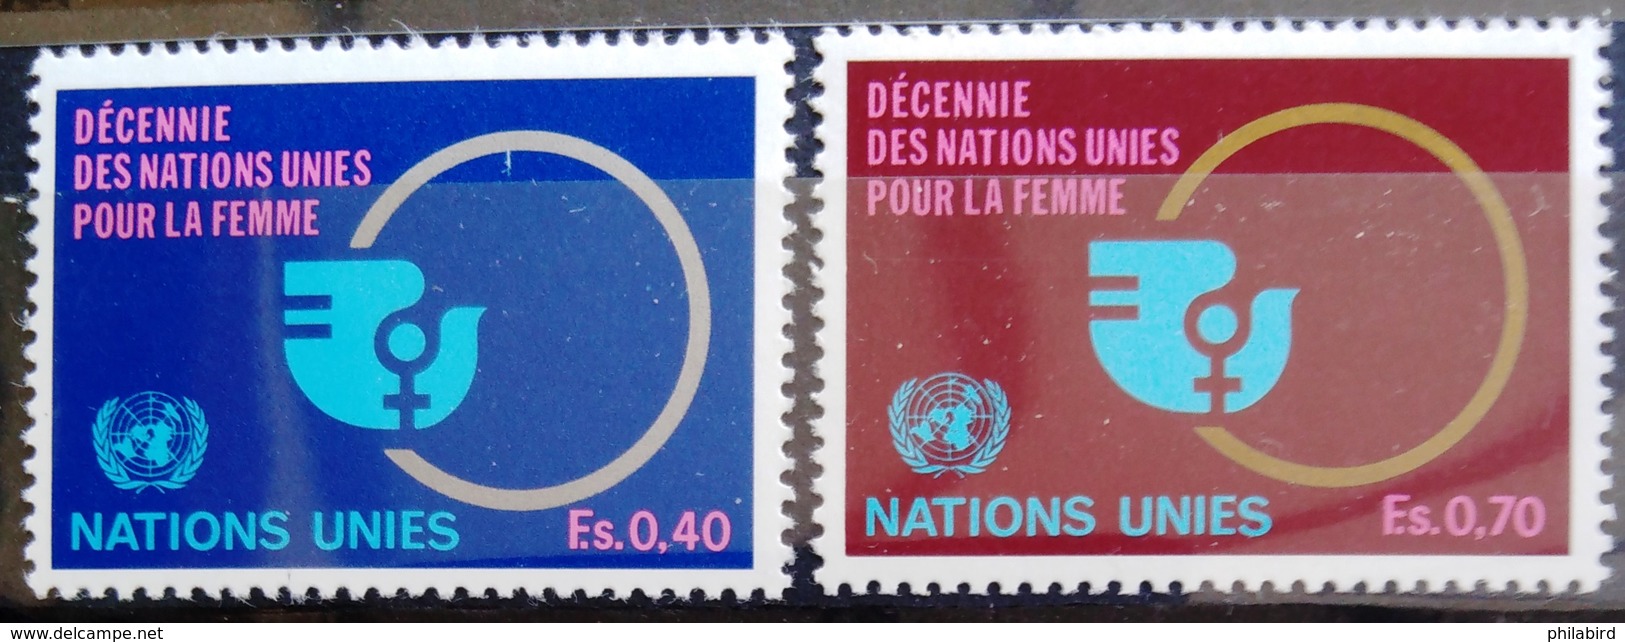 NATIONS-UNIS  GENEVE                  N° 89/90                      NEUF** - Unused Stamps